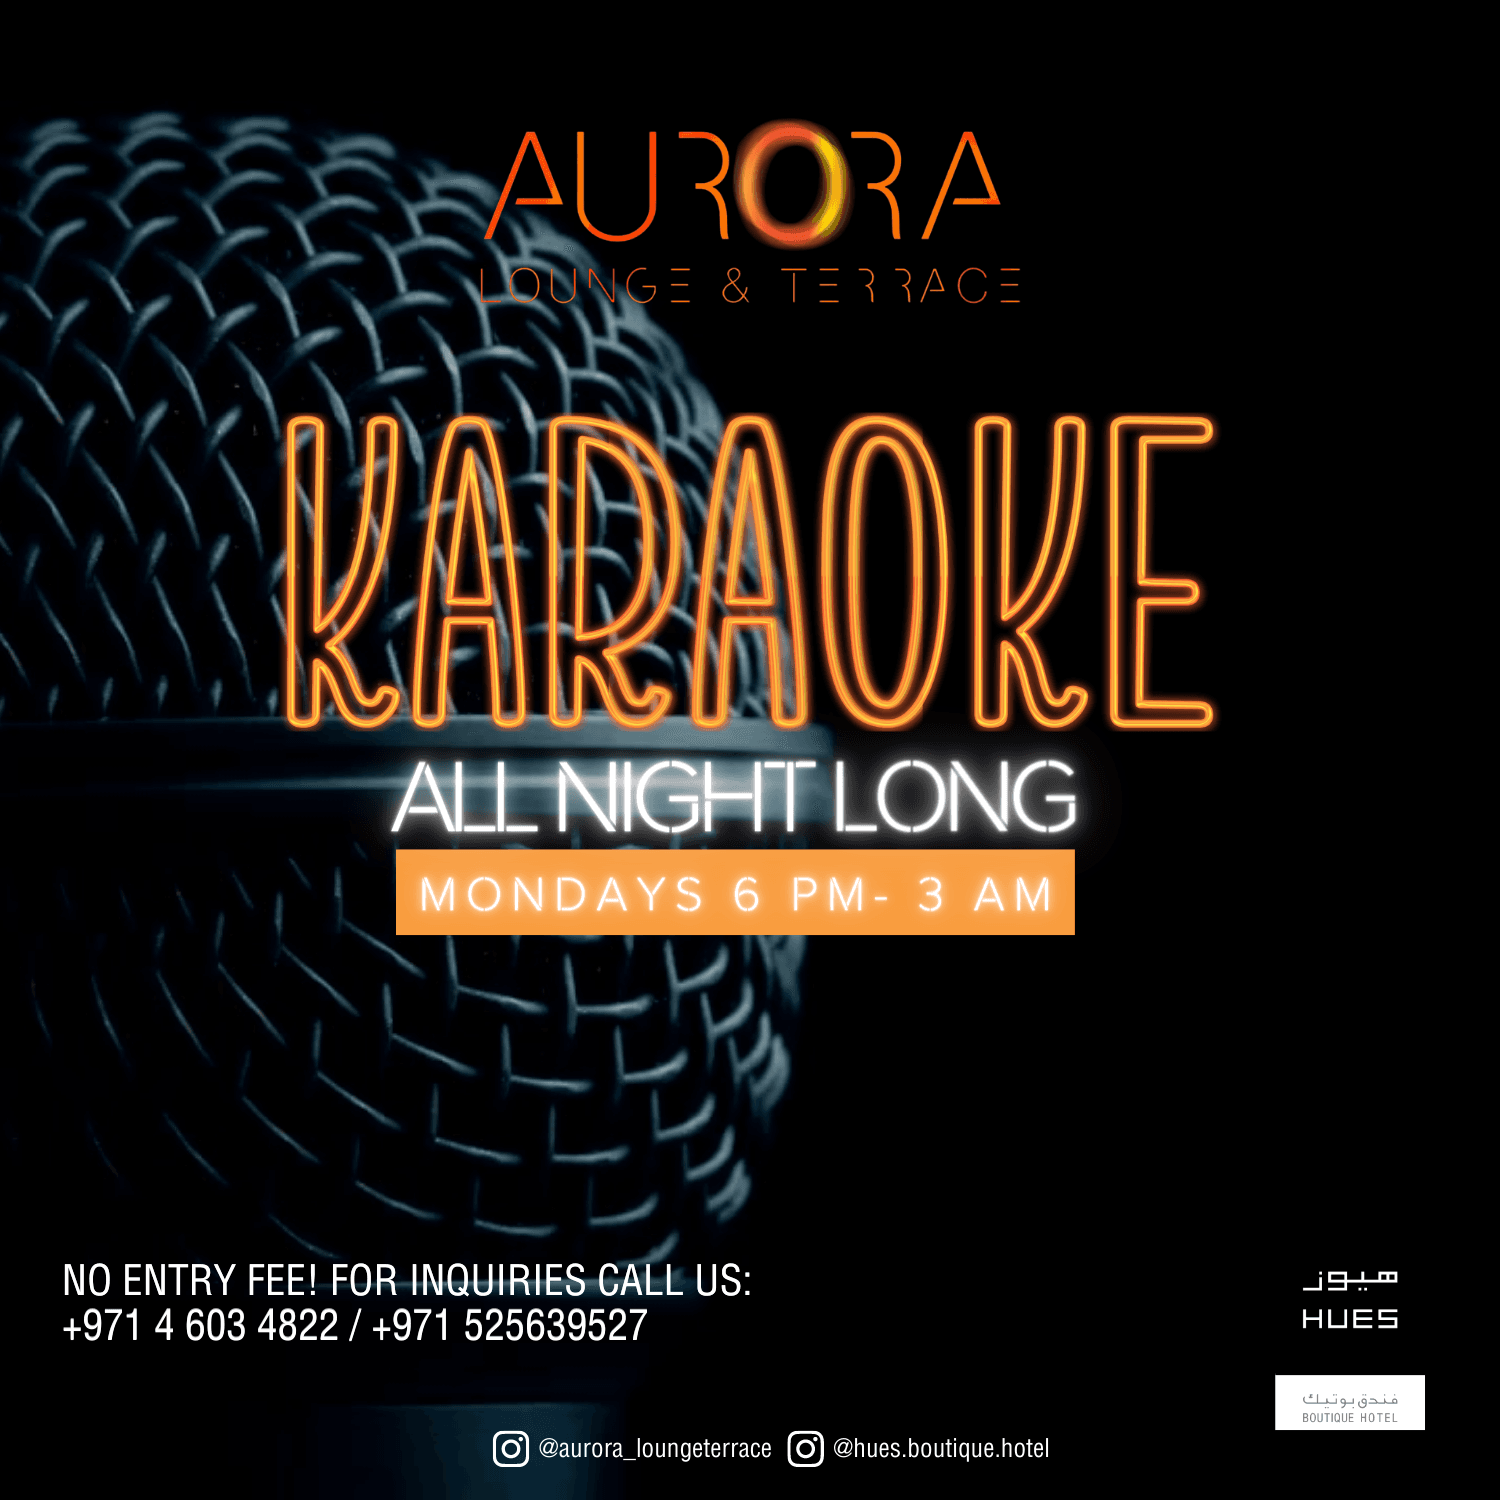 Karaoke All Night Long!